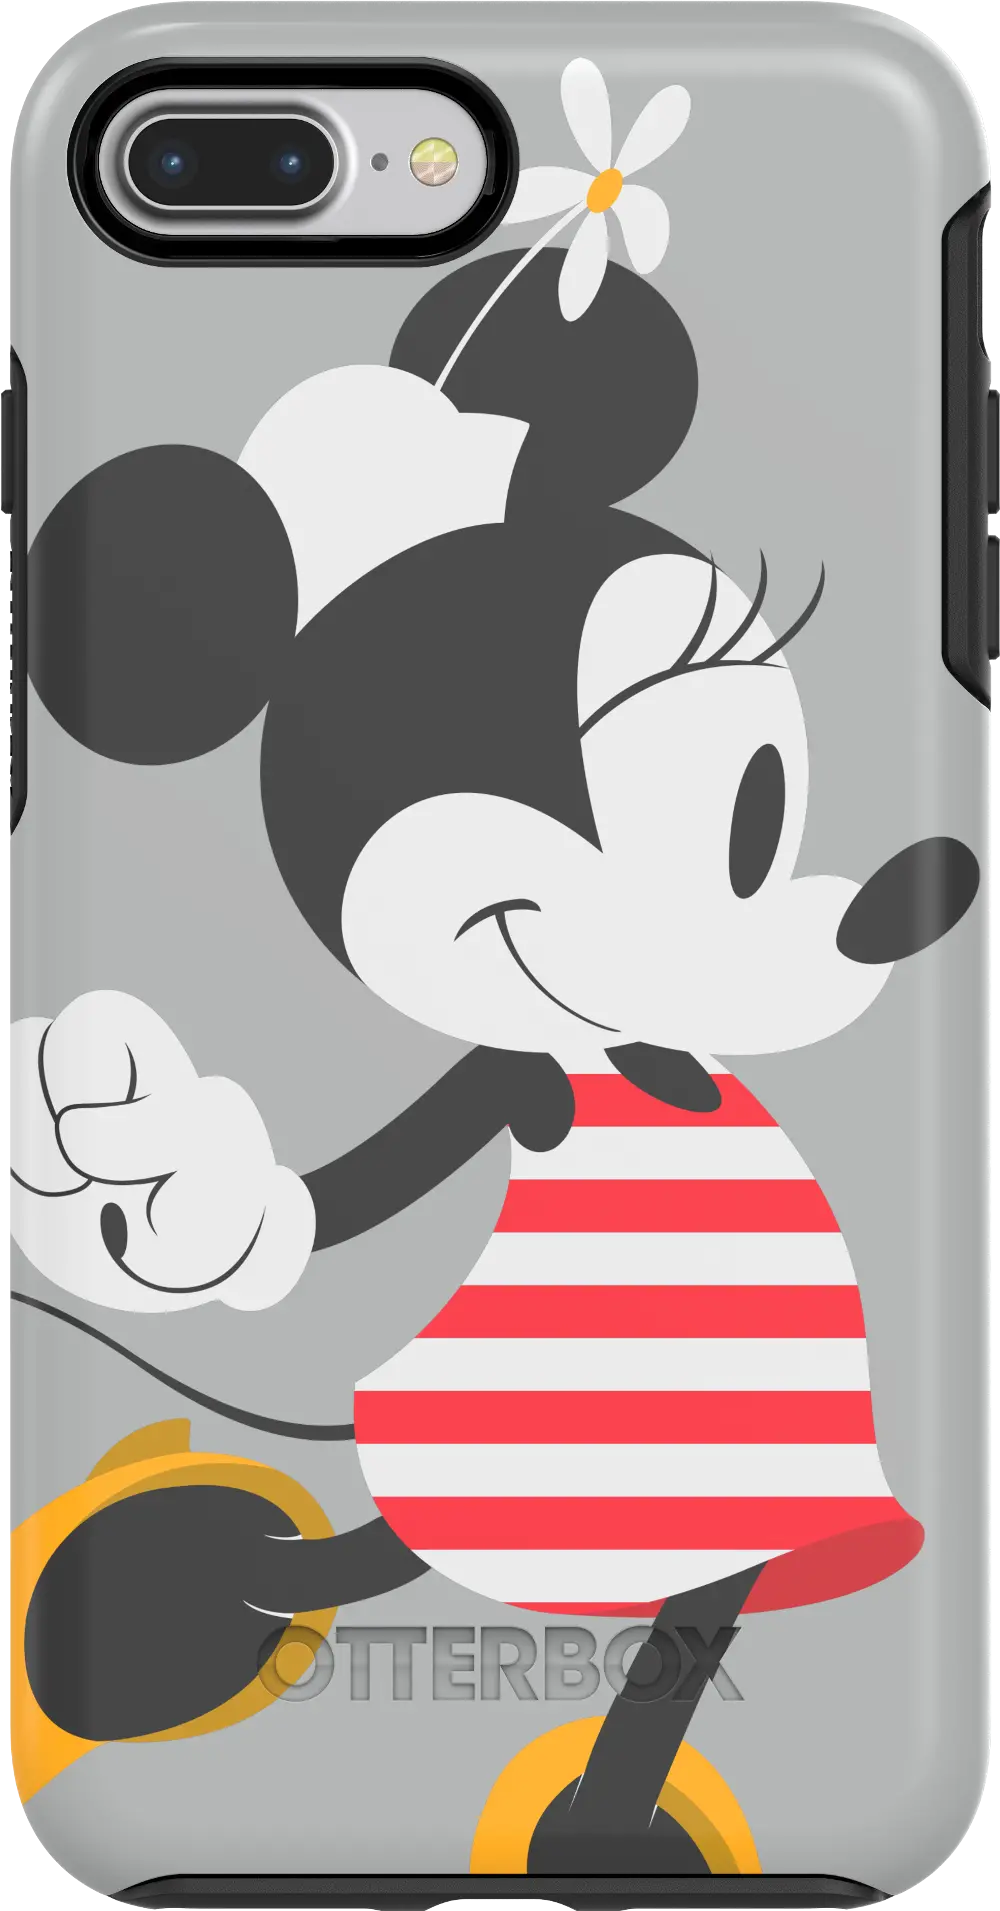 77-57540,S-IP8P-MI OtterBox Minnie iPhone 7 Plus / iPhone 8 Plus Case-1